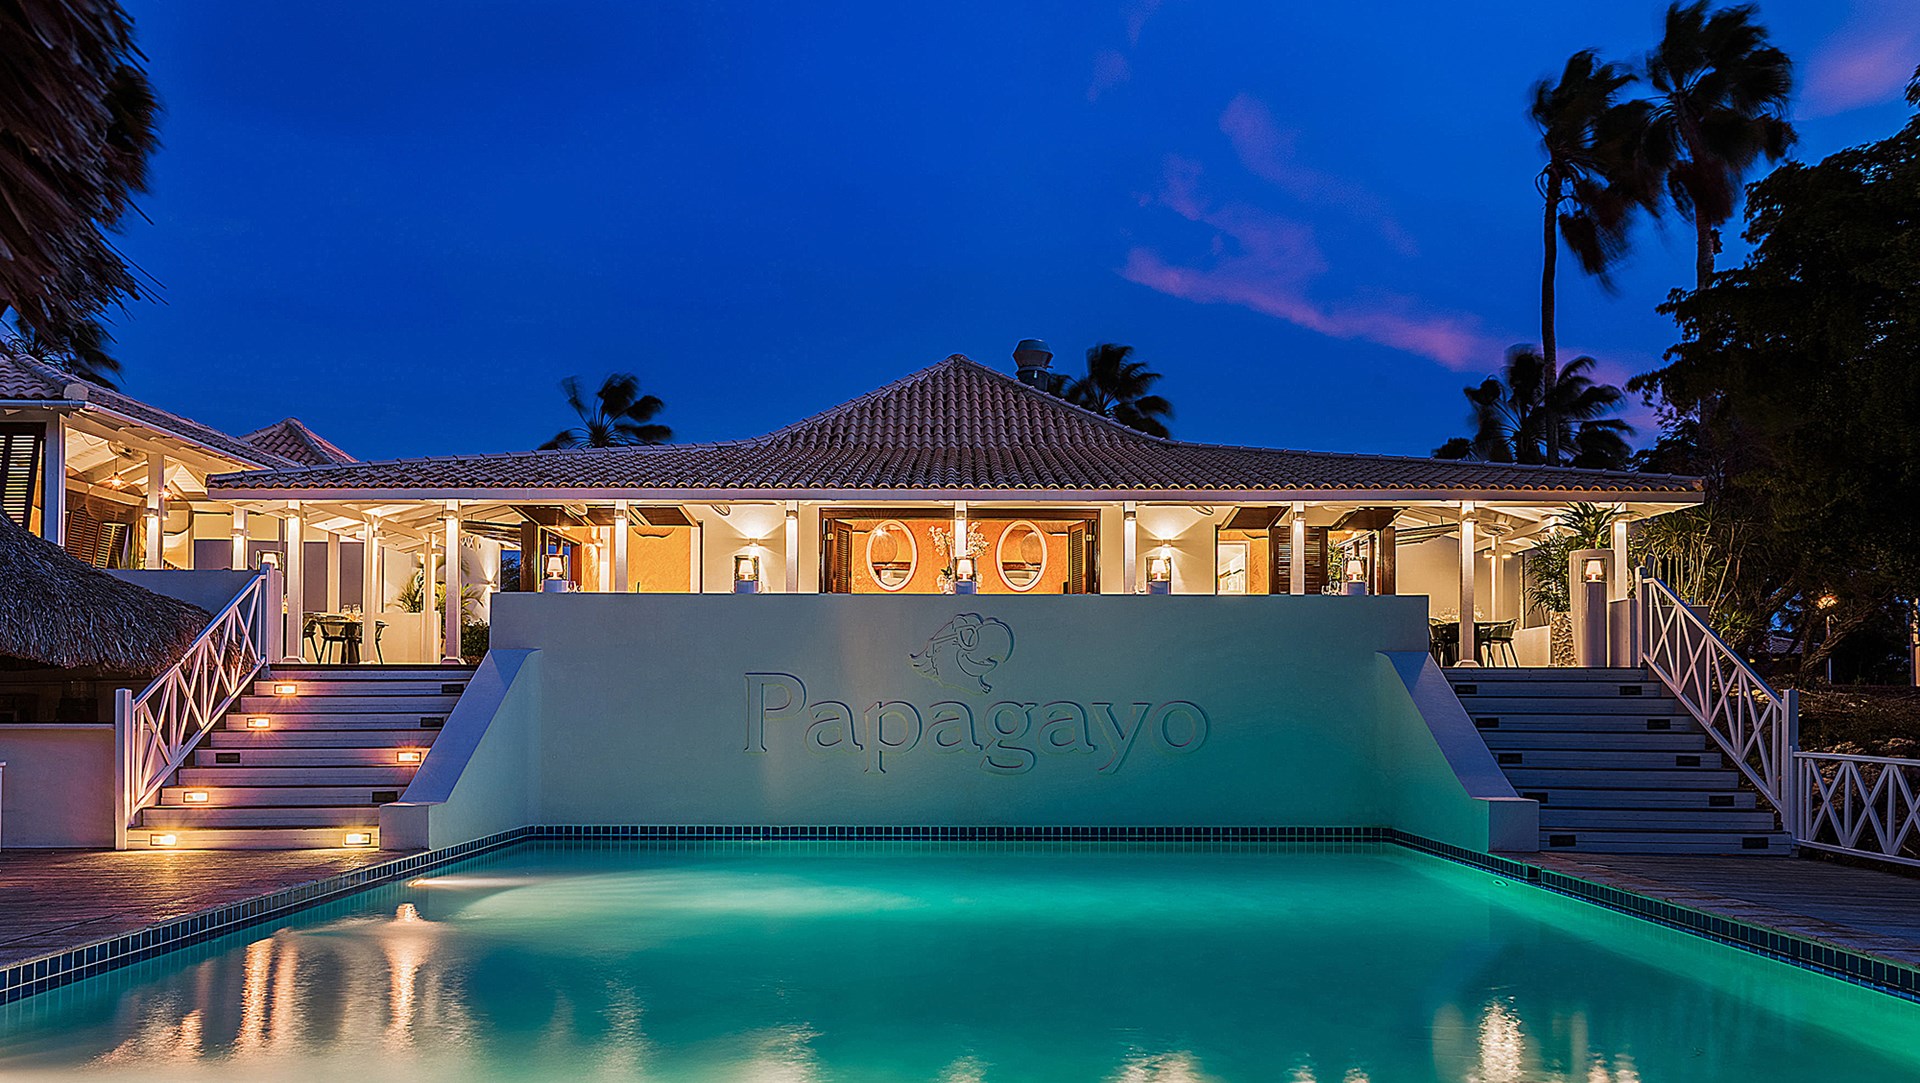 Kom met de hele familie en verblijf in één van de bungalows Papagayo Beach Resort